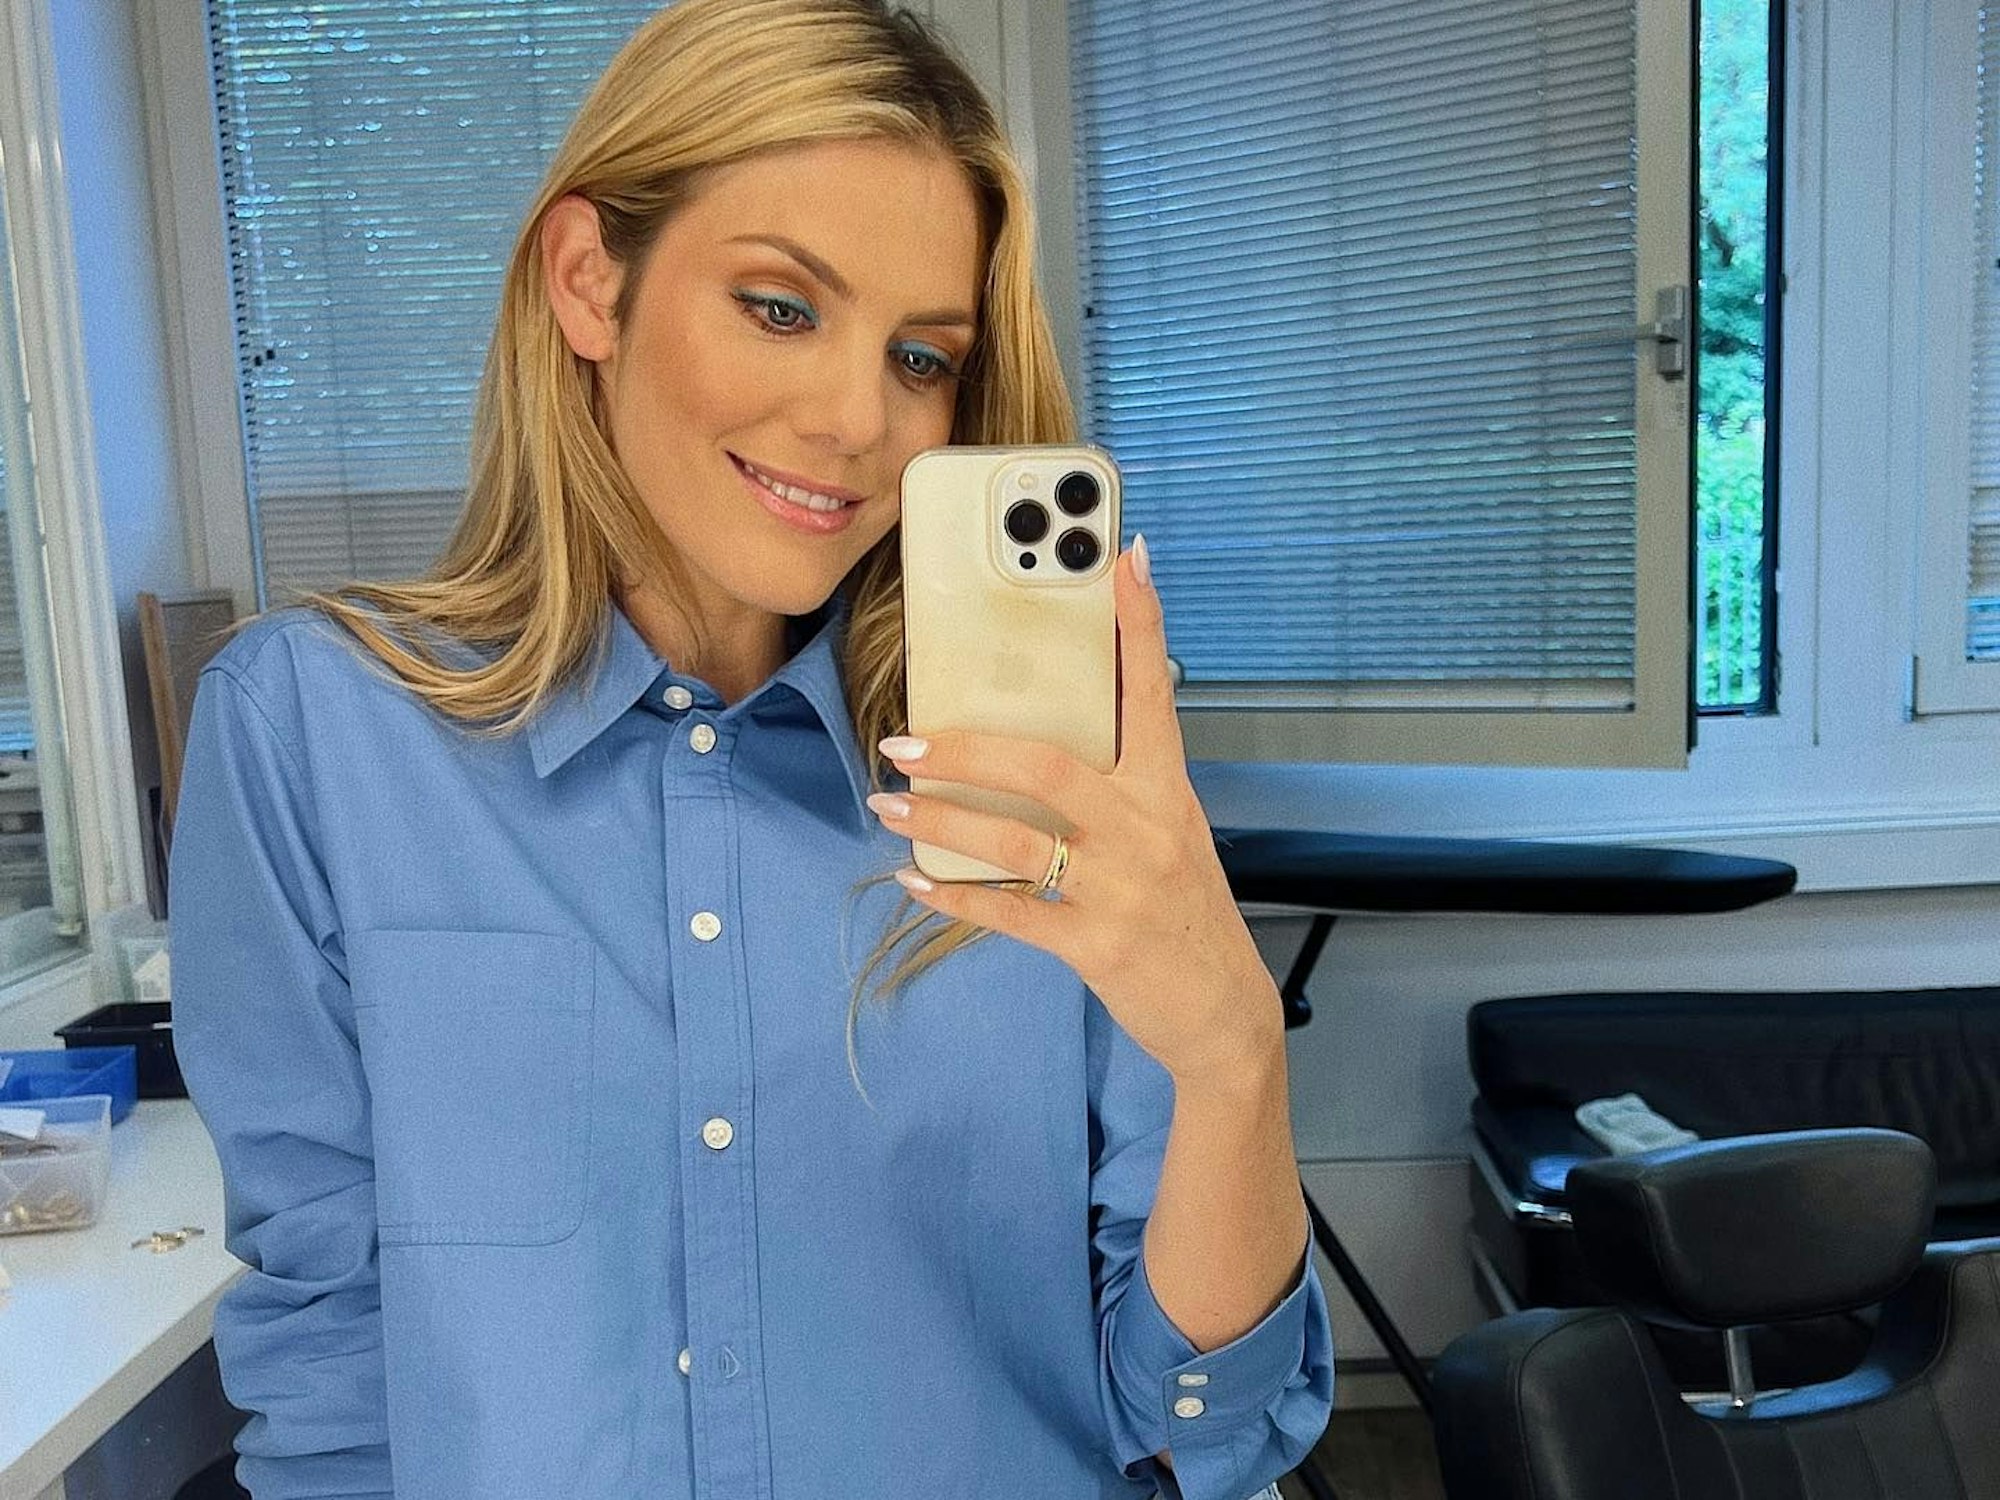 Viviane posiert für ein Spiegel-Selfie in einer blauen Bluse.